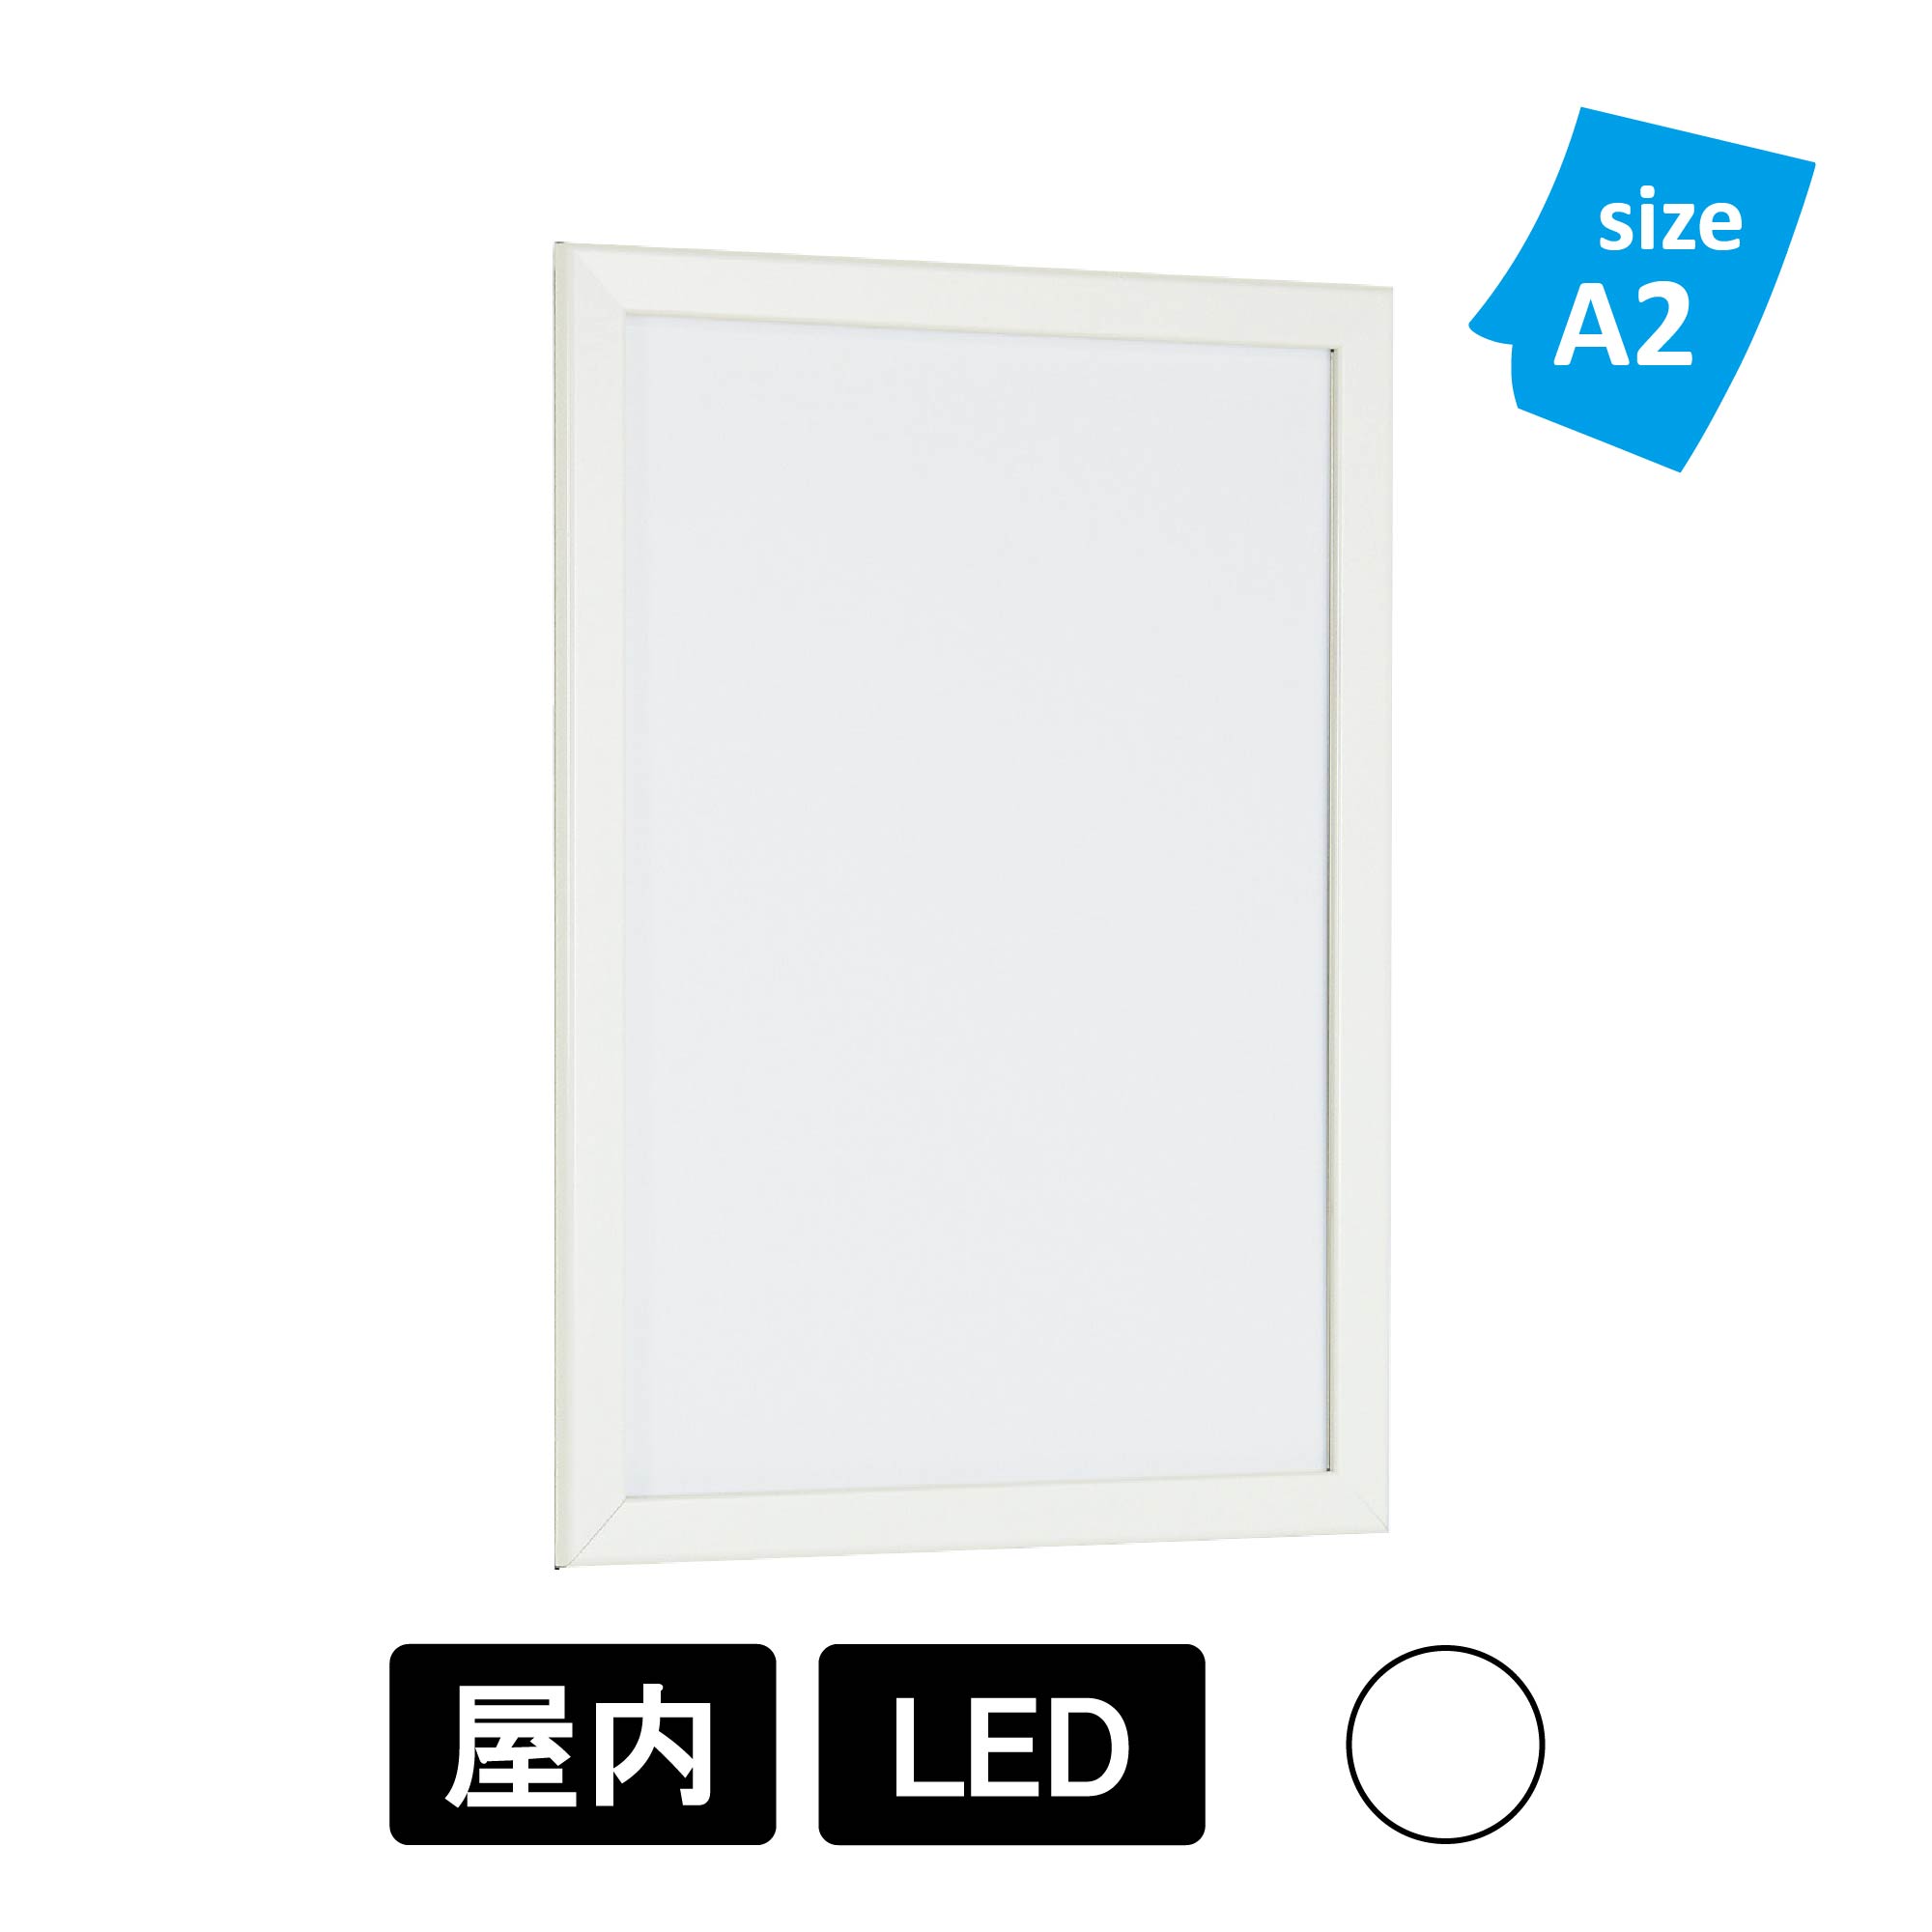 LED内照パネル FE934 W ホワイト A2(FE934 W) ポスターフレーム LED,タテヨコ設置可能,前面四方開閉,壁付け,スタンド,薄型,スリム  看板の激安通販ならサインウェブ